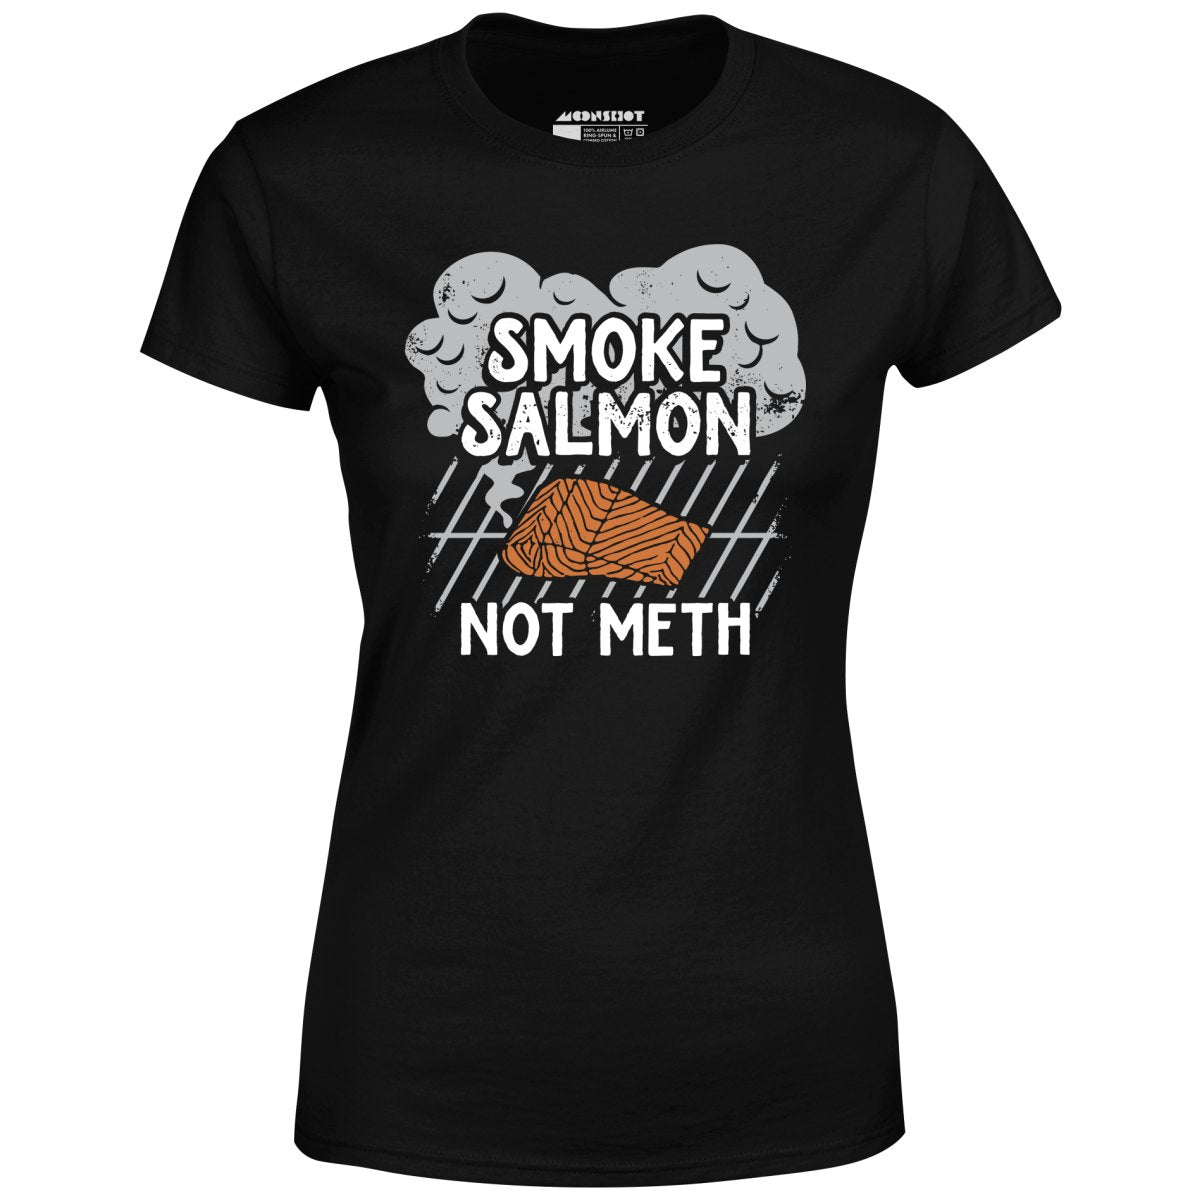 Smoke Salmon Not Meth - Women's T-Shirt